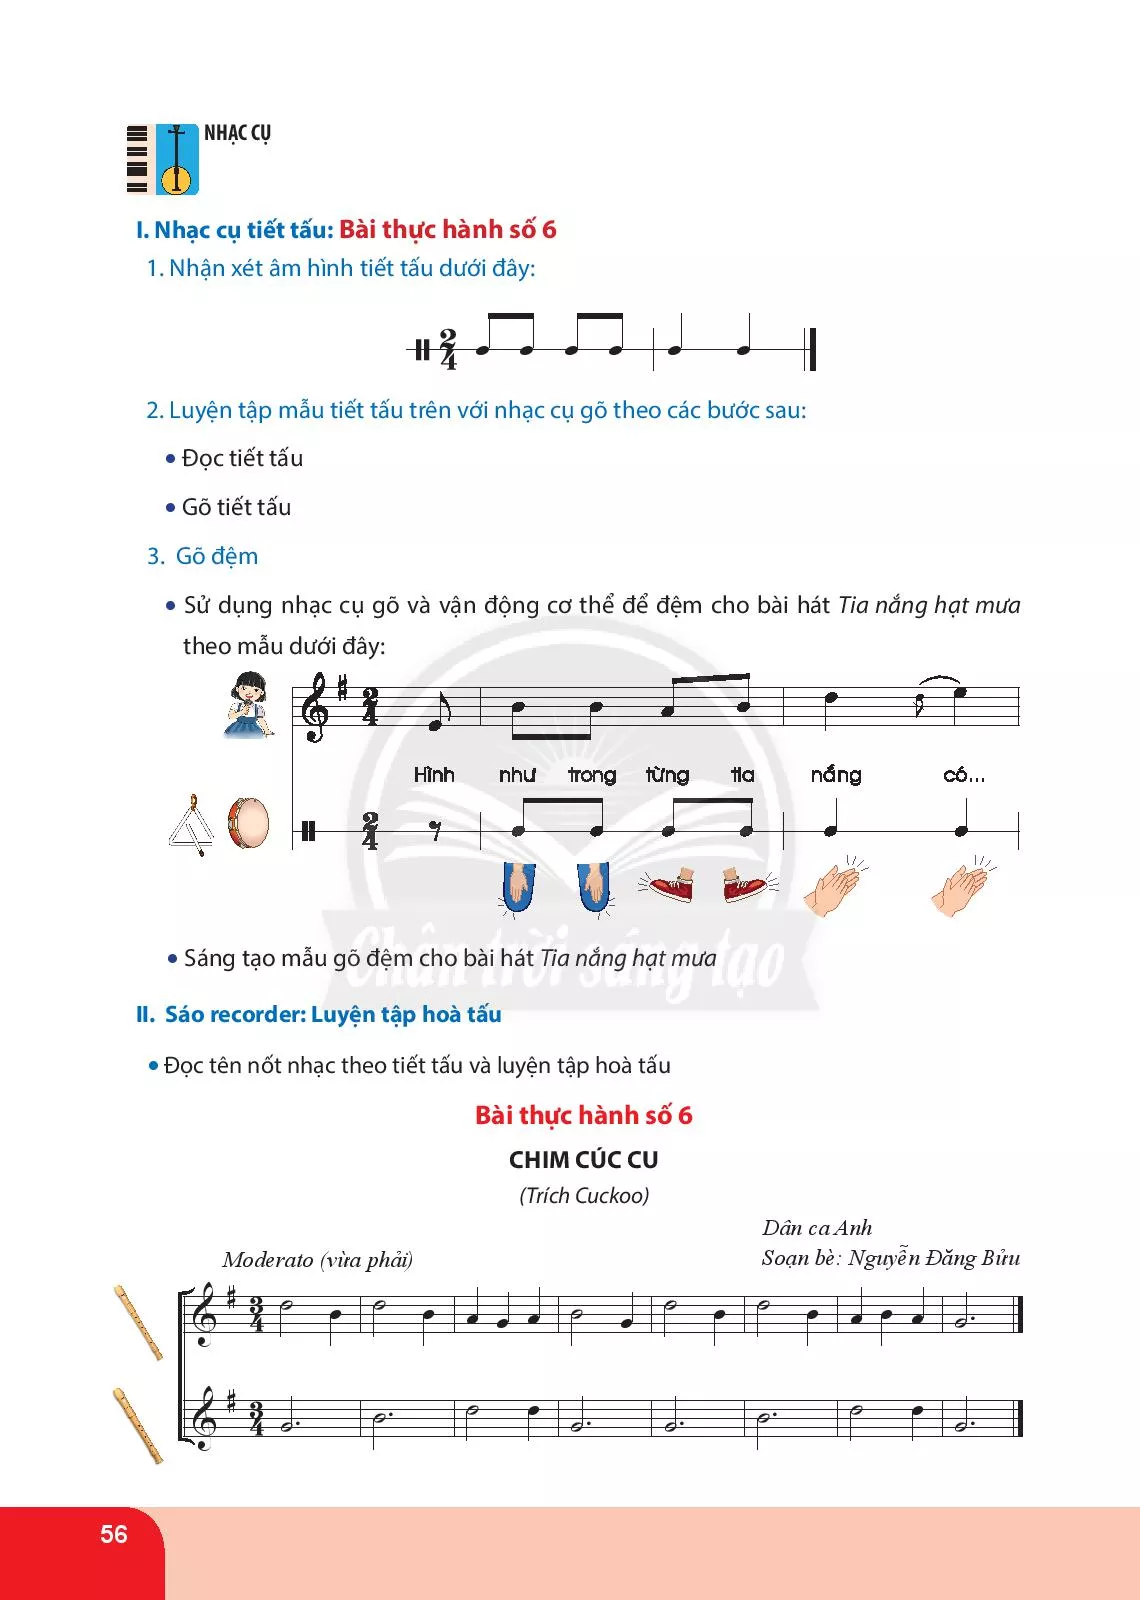 Nhạc cụ tiết tấu. Bài thực hành số 6 Nhạc cụ giai điệu: Bài thực hành số 6 nhạc cụ sáo recorder hoặc kèn phím 